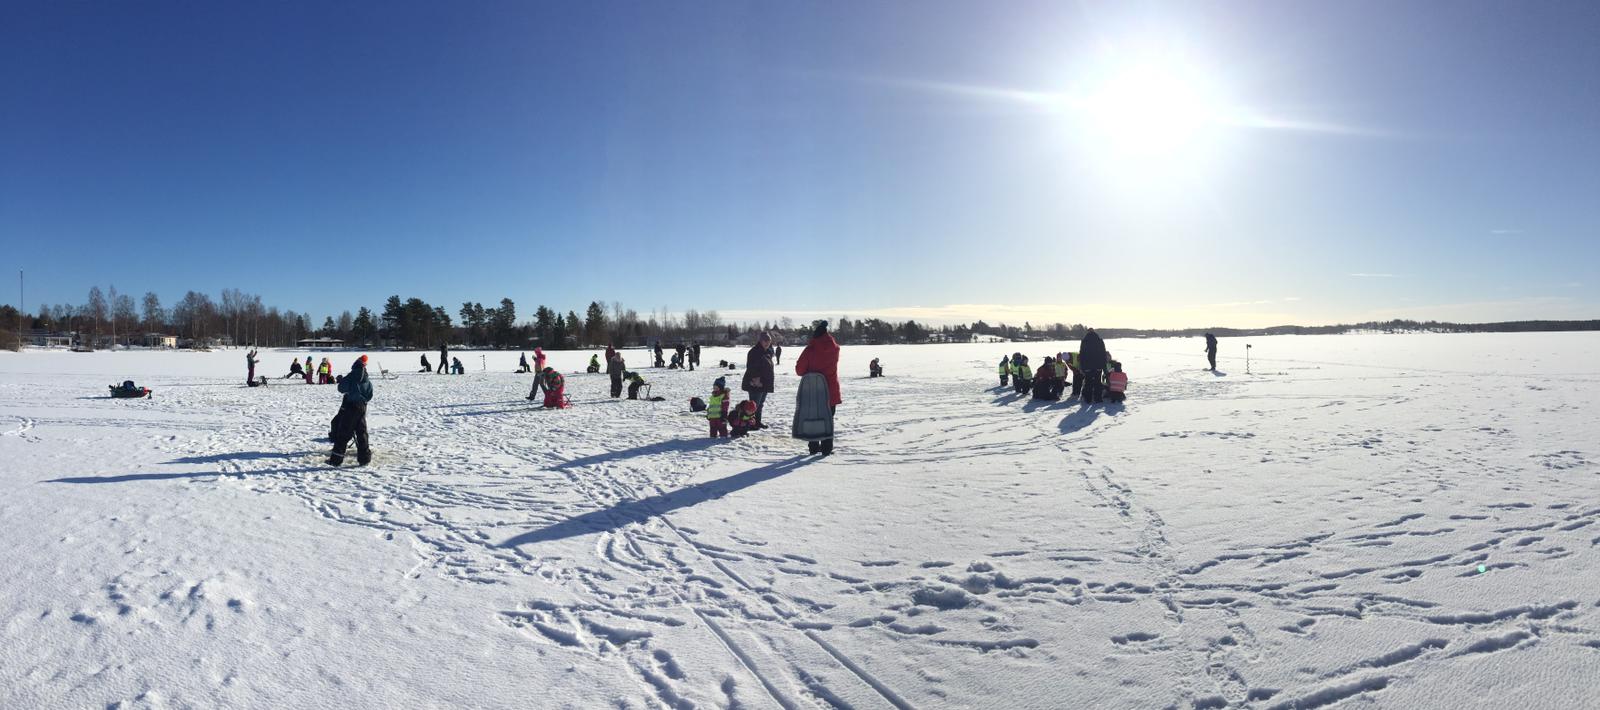 Kuva: Jäätynyt järvi lumen peitossa ja leikkiviä lapsia